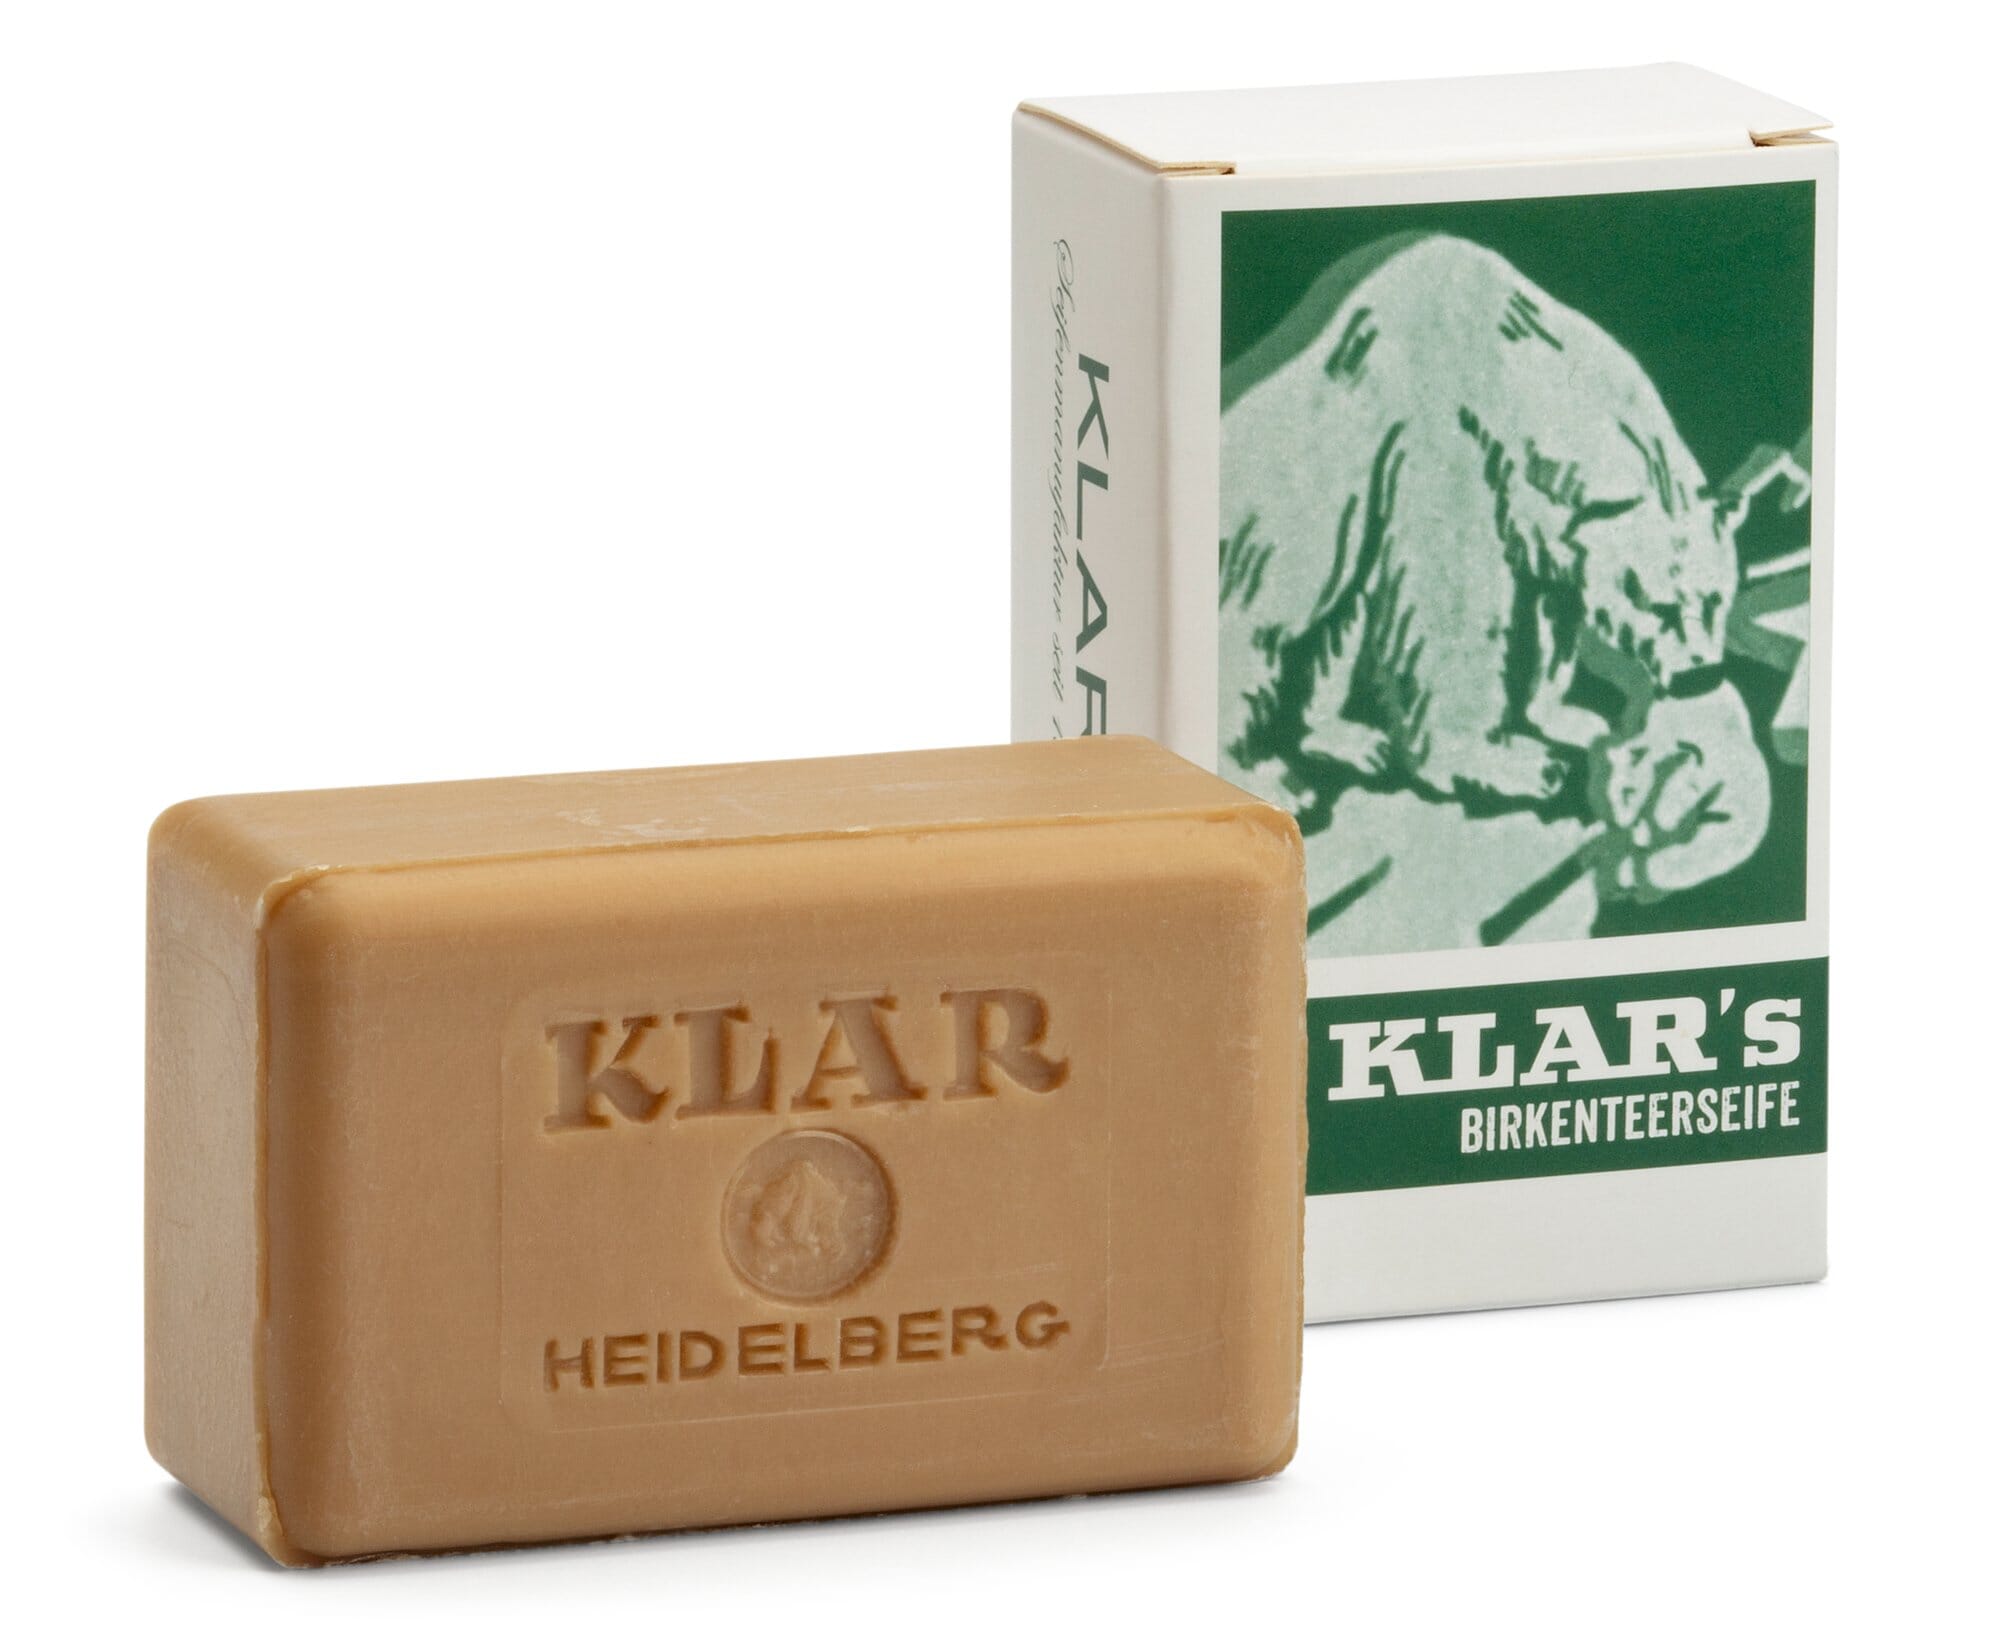 Clear birch tar soap